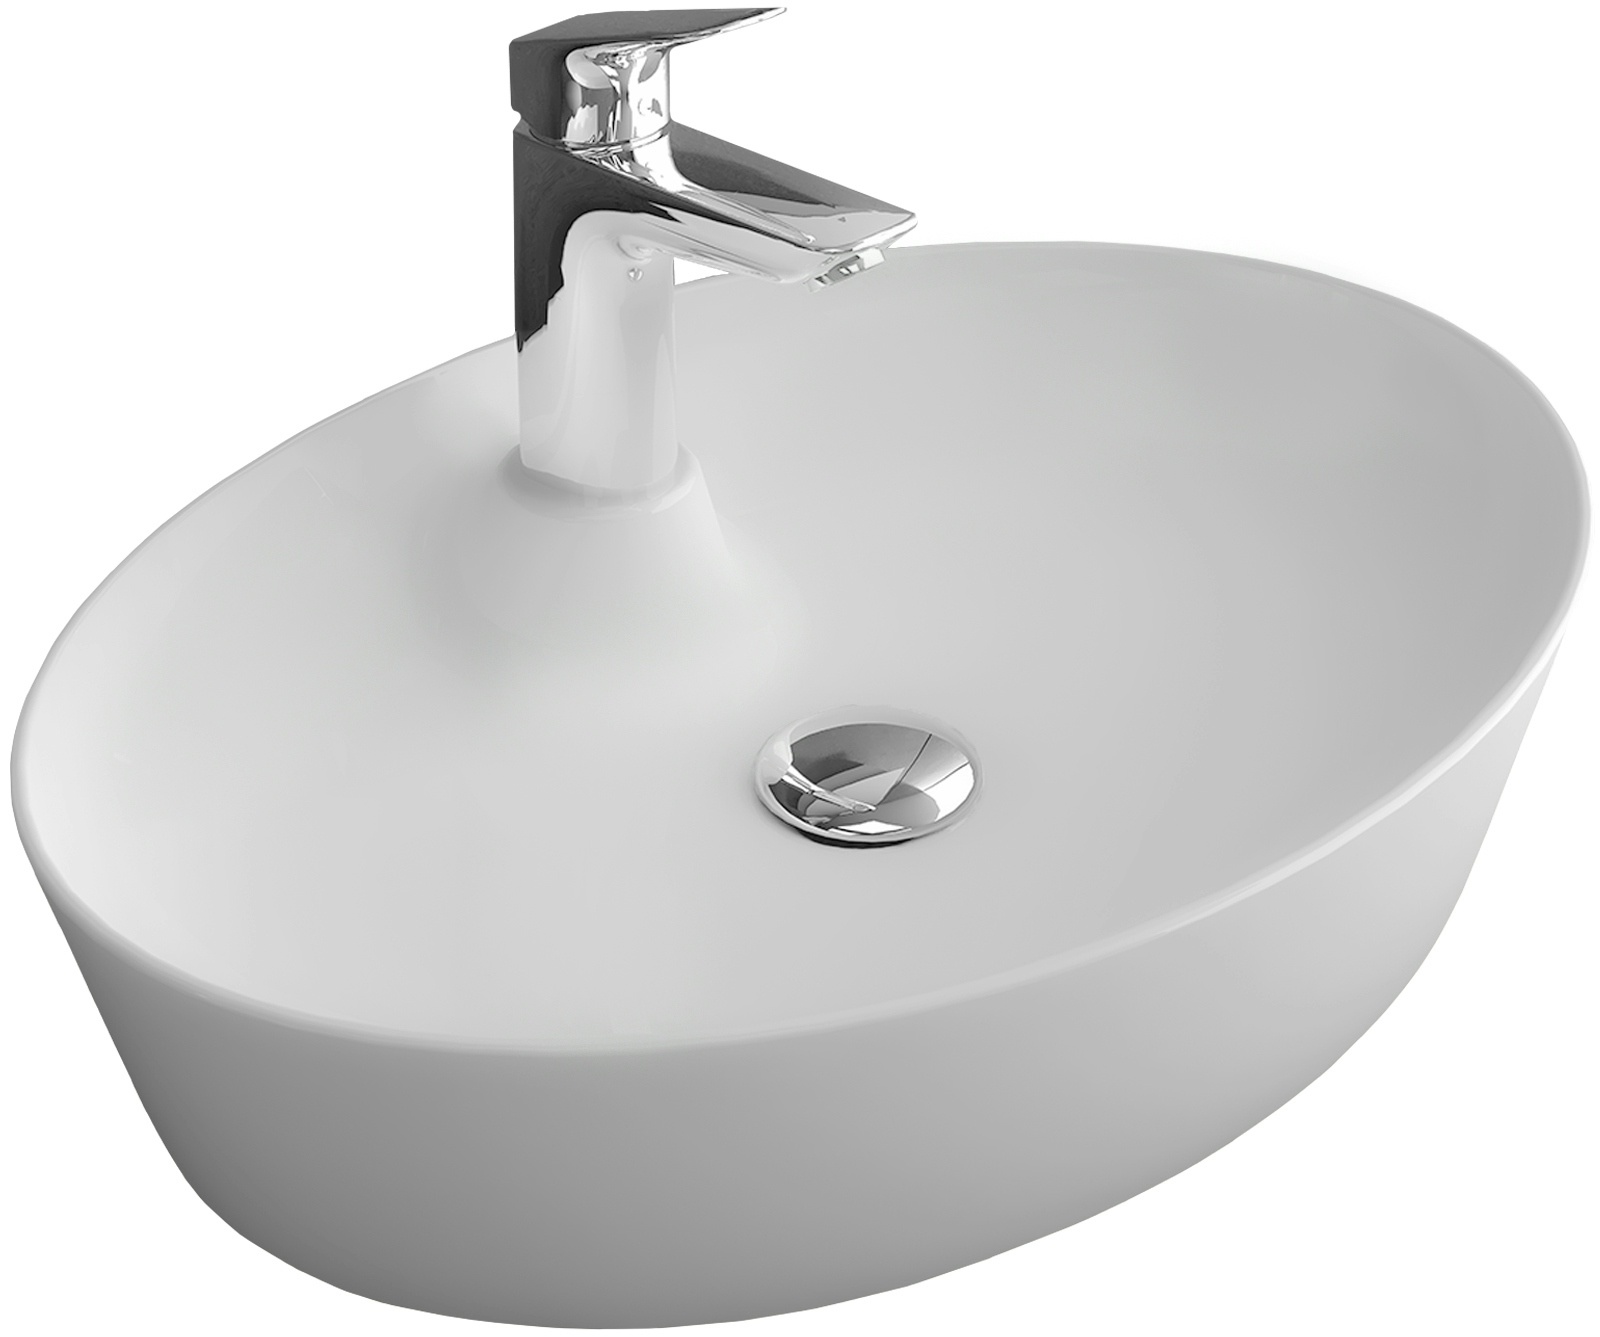 Alpenberger Aufsatzwaschbecken Oval | Keramik Waschschale mit Nano Lotuseffekt | Waschbecken mit Hahnloch | Keramikbecken für Modernes Bad & Gäste-WC